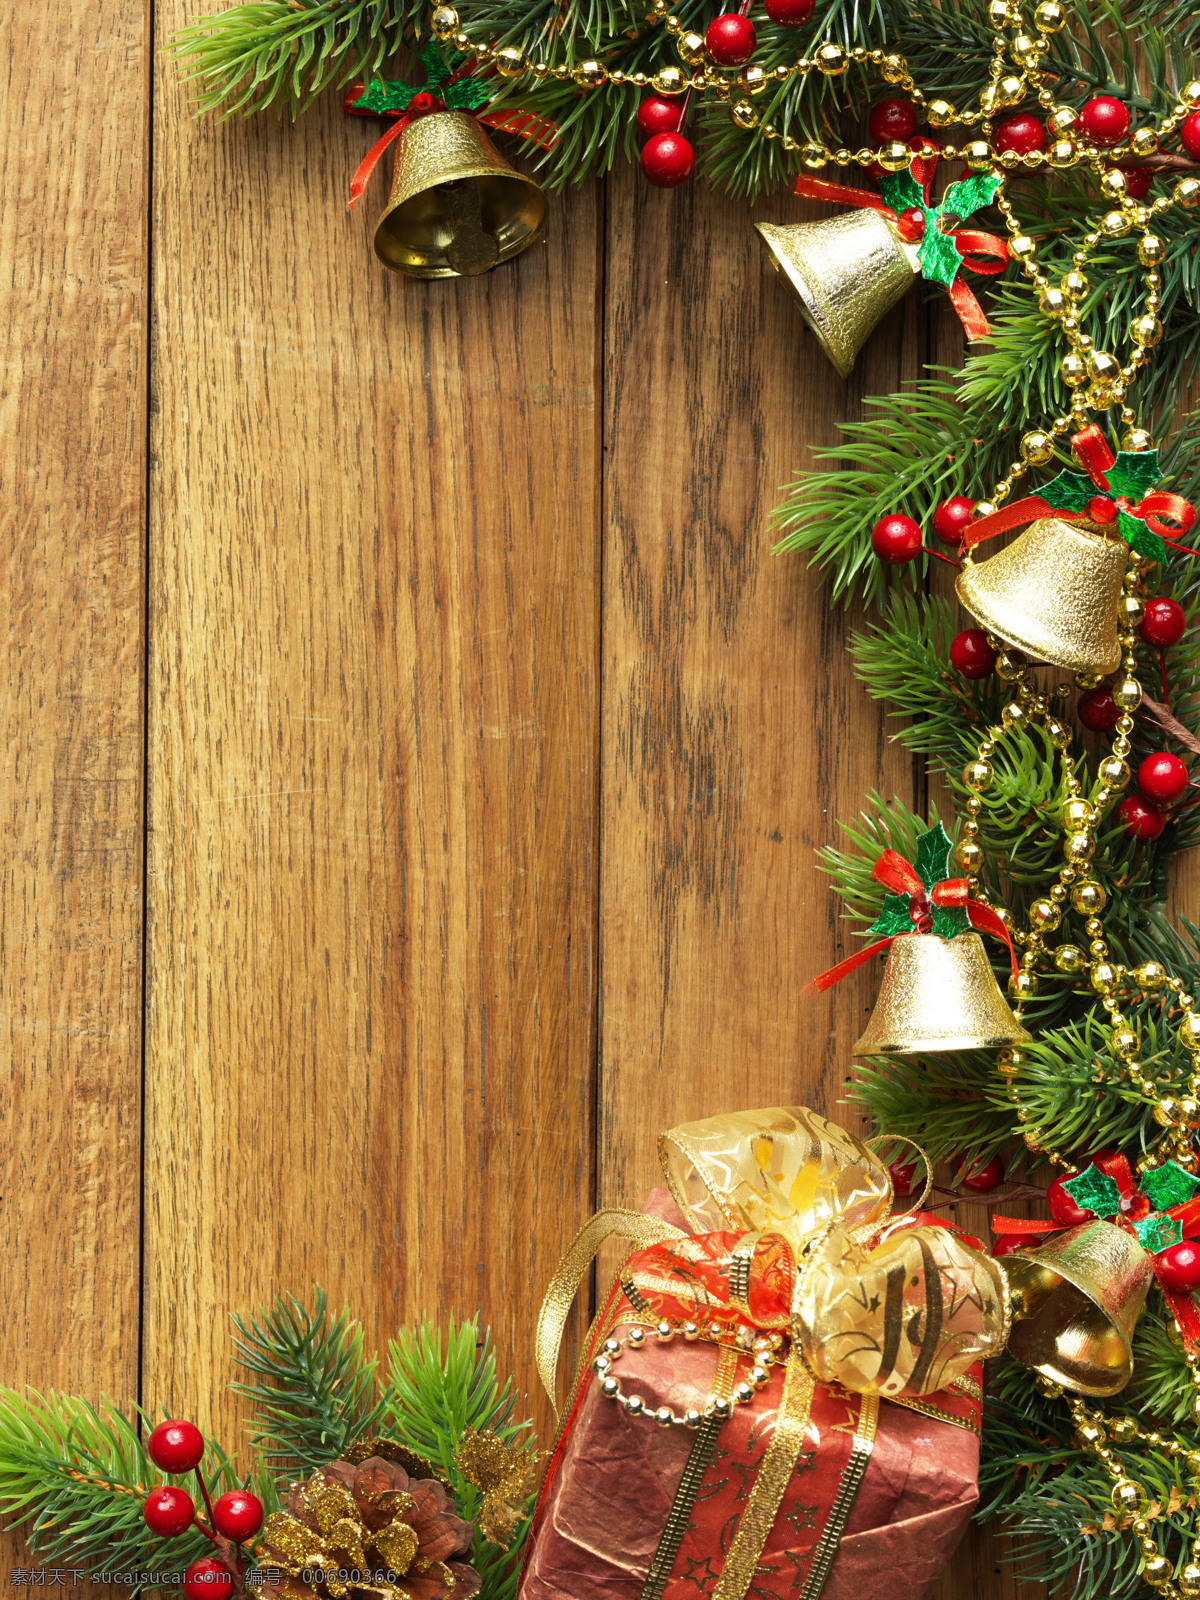 圣诞 元素 边框 圣诞树 圣诞节 节日 彩球 礼物 铃铛 圣诞元素 木板 木纹 节日庆典 生活百科